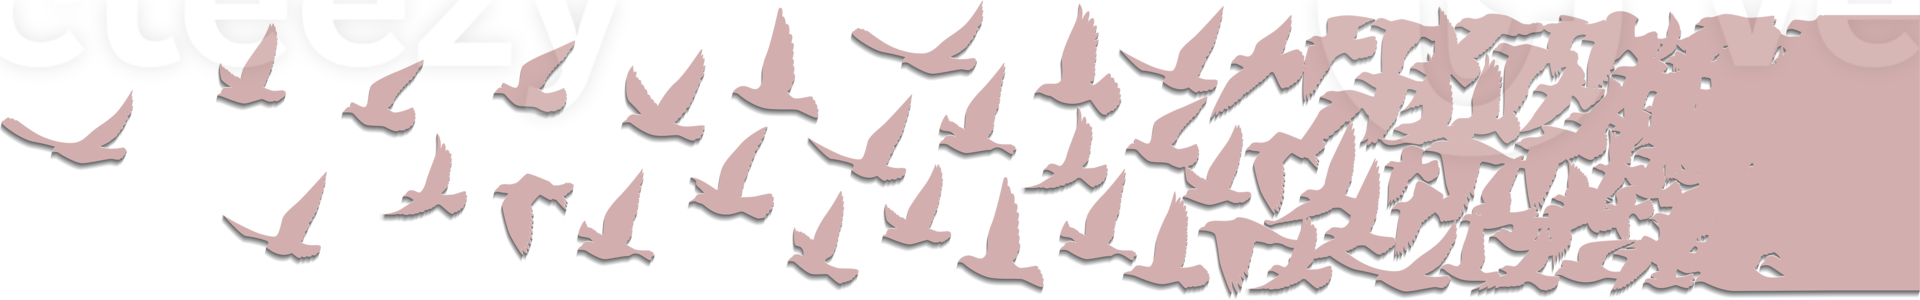 papel de parede padrão de silhuetas de pássaros voando. png transparente. pássaro isolado voando. desenho de tatuagem. modelo para cartão, pacote e papel de parede.